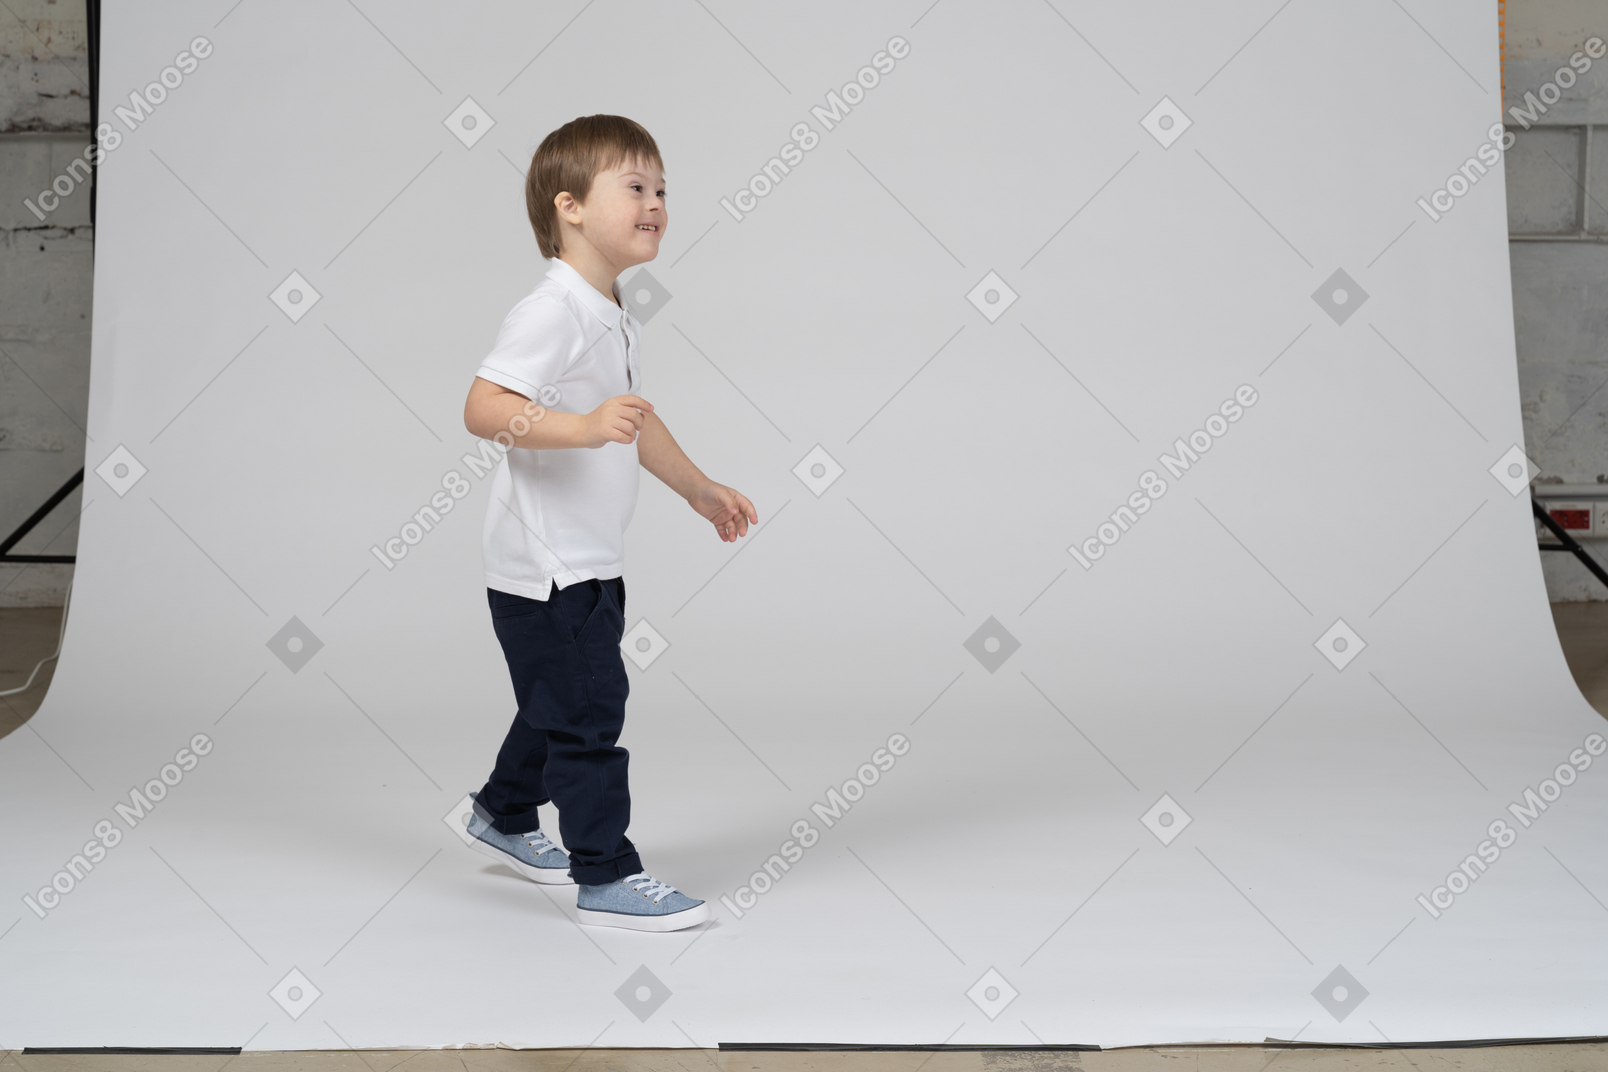 Vue latérale d'un garçon joyeux qui marche